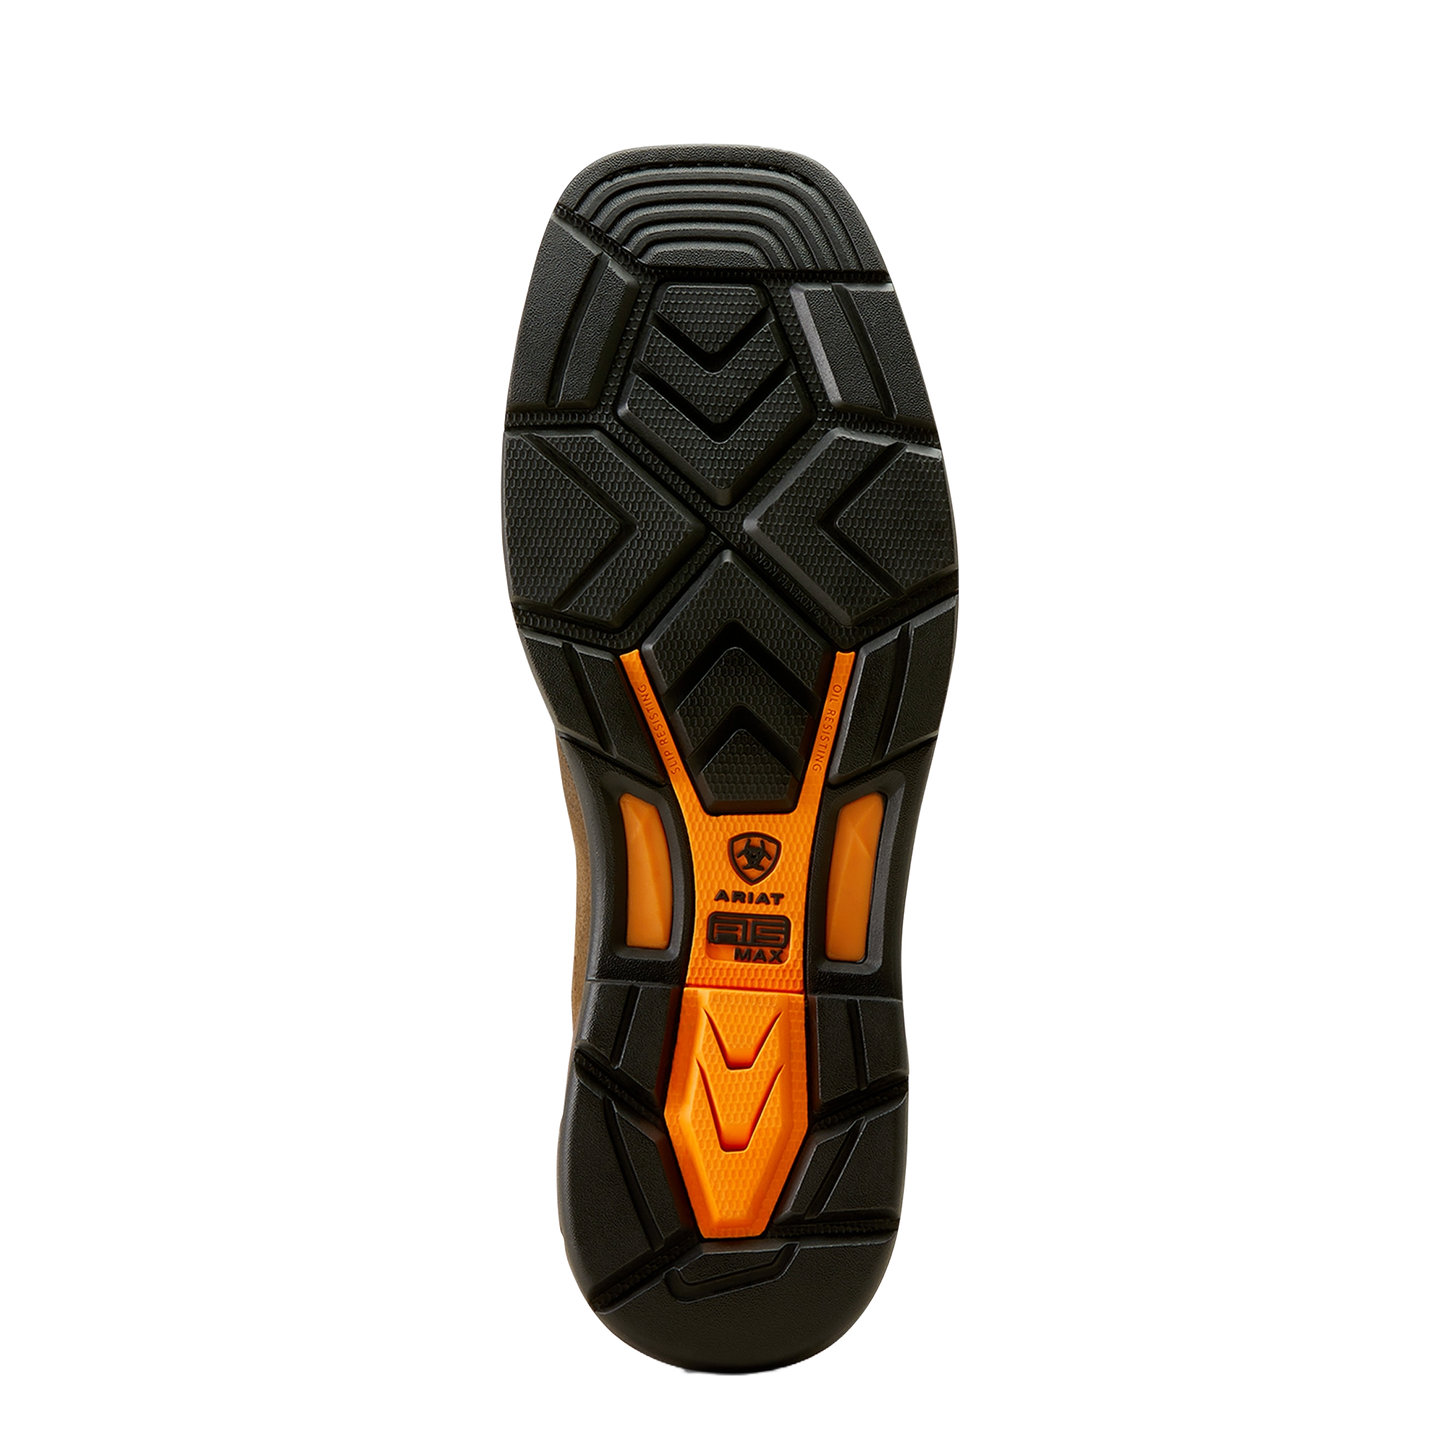 Ariat Men's WorkHog XT VentTEK Waterproof Carbon Toe Work Boot 10050835